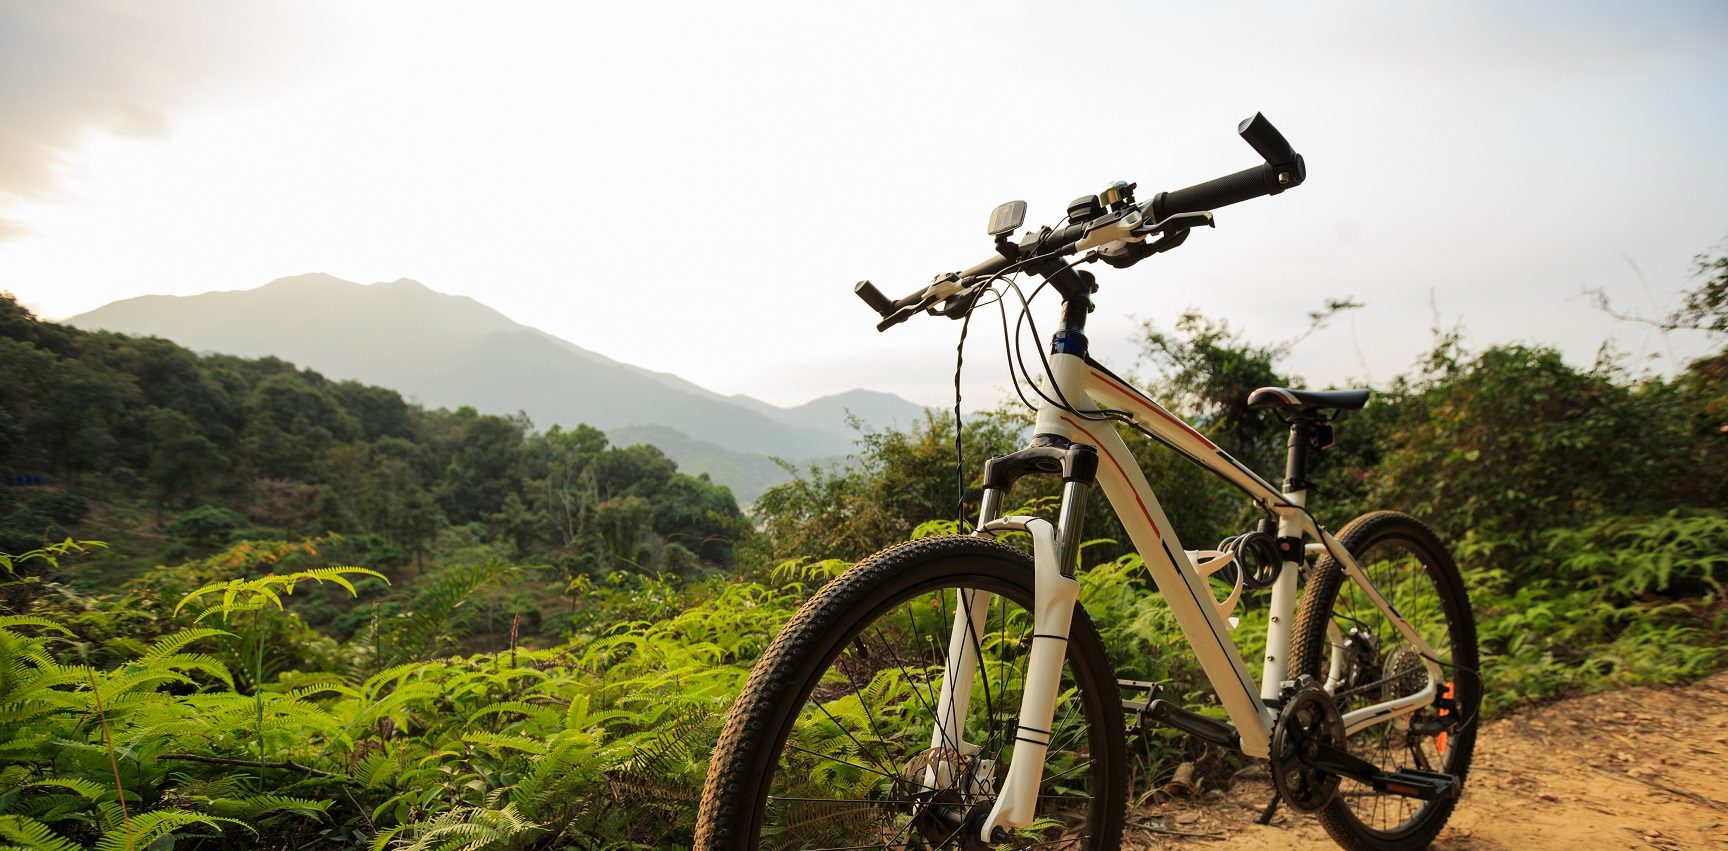 Fotos para Instagram montando bicicleta de montaña en el sendero del bosque de montaña